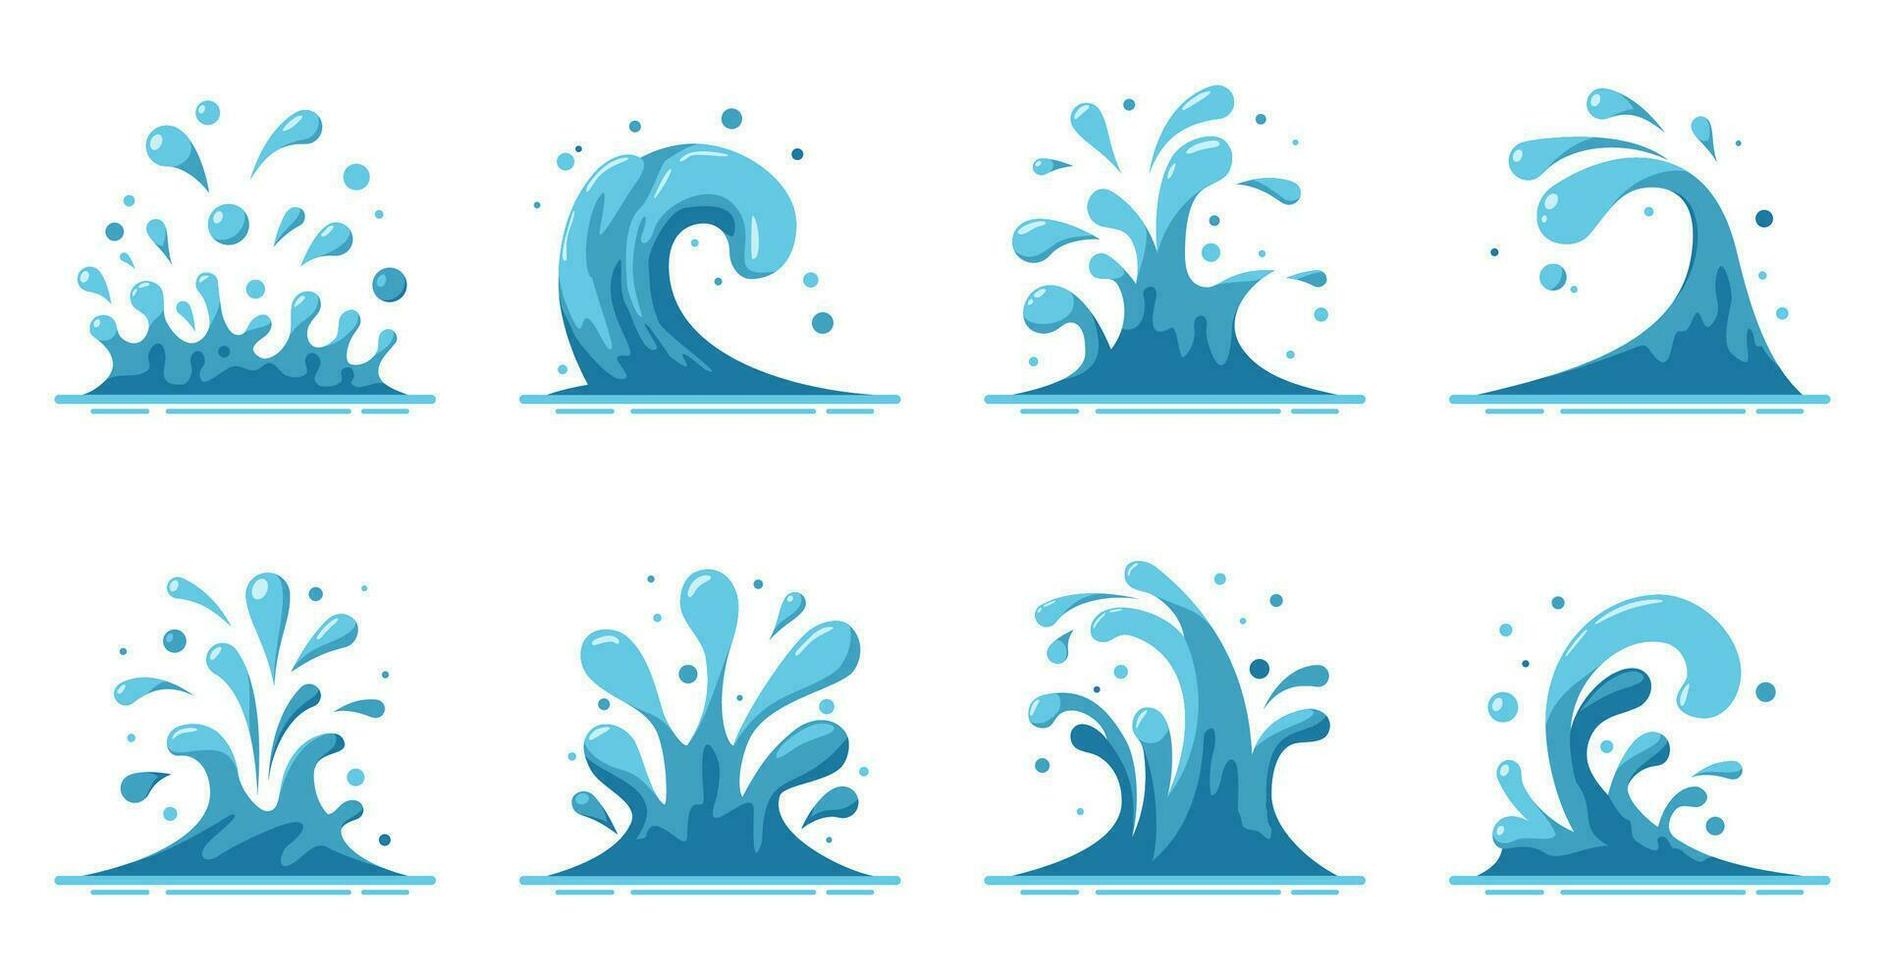 salpicaduras y asperja de agua conjunto aislado en blanco antecedentes. azul agua movimiento efectos, fluye, arroyos, derrames que cae agua gotas. mar o Oceano olas y remolino. vector ilustración.